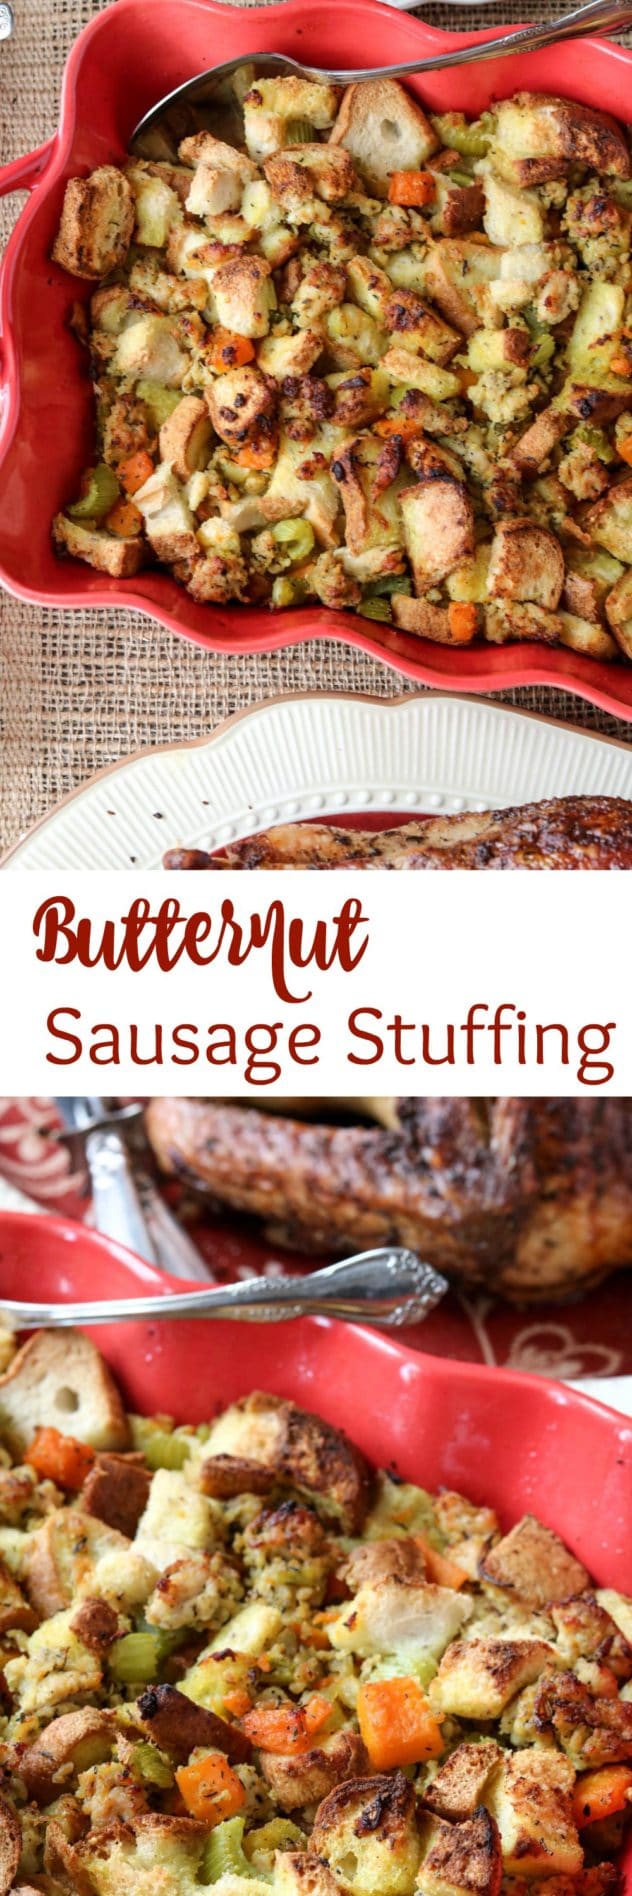 Butternut Sausage Stuffing